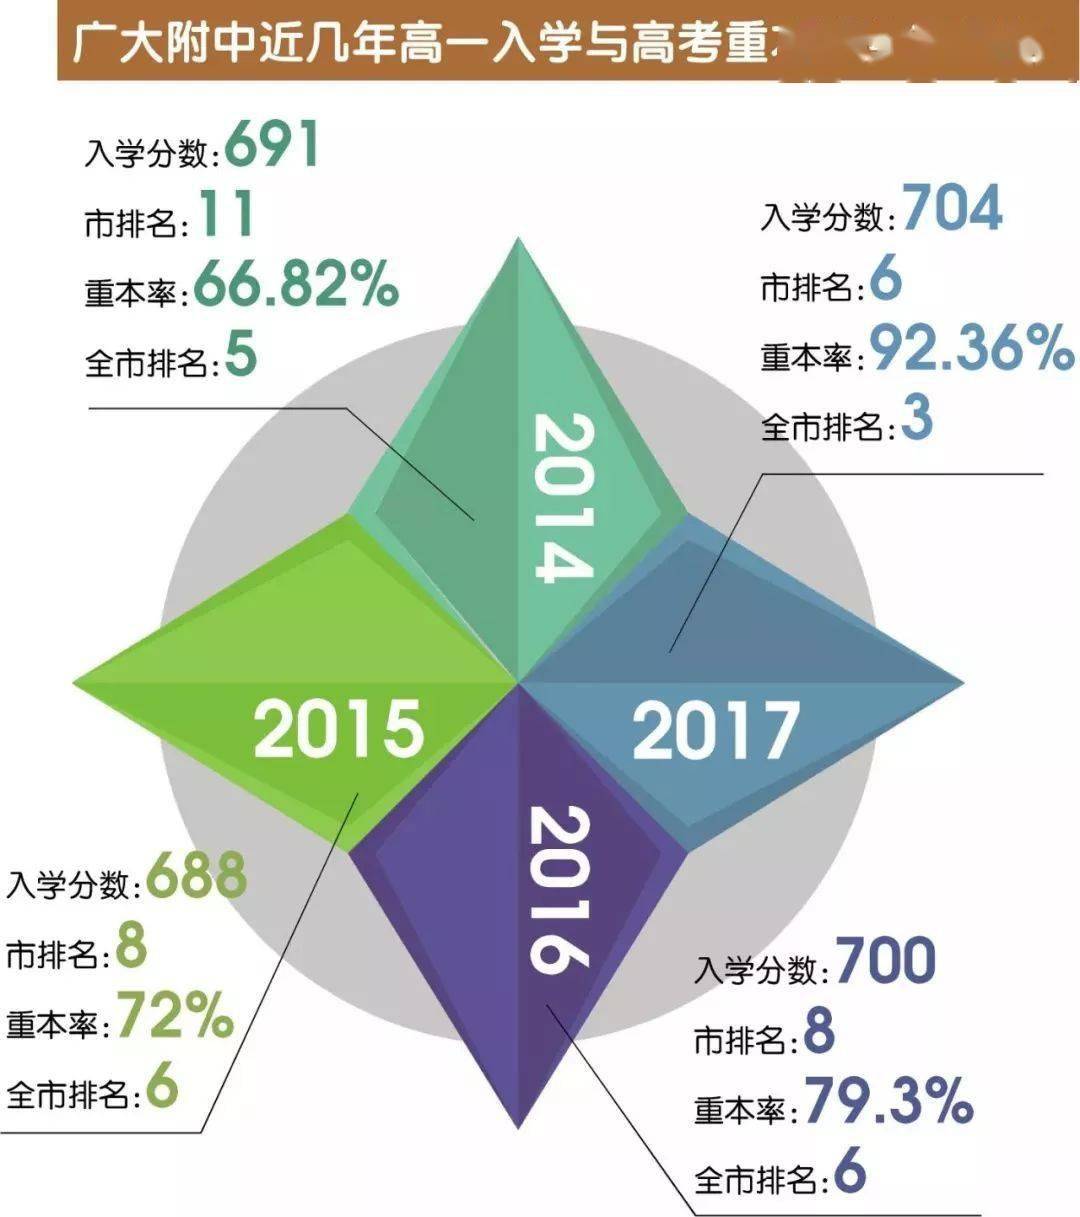 广东省高中排名 2020_广东省地图